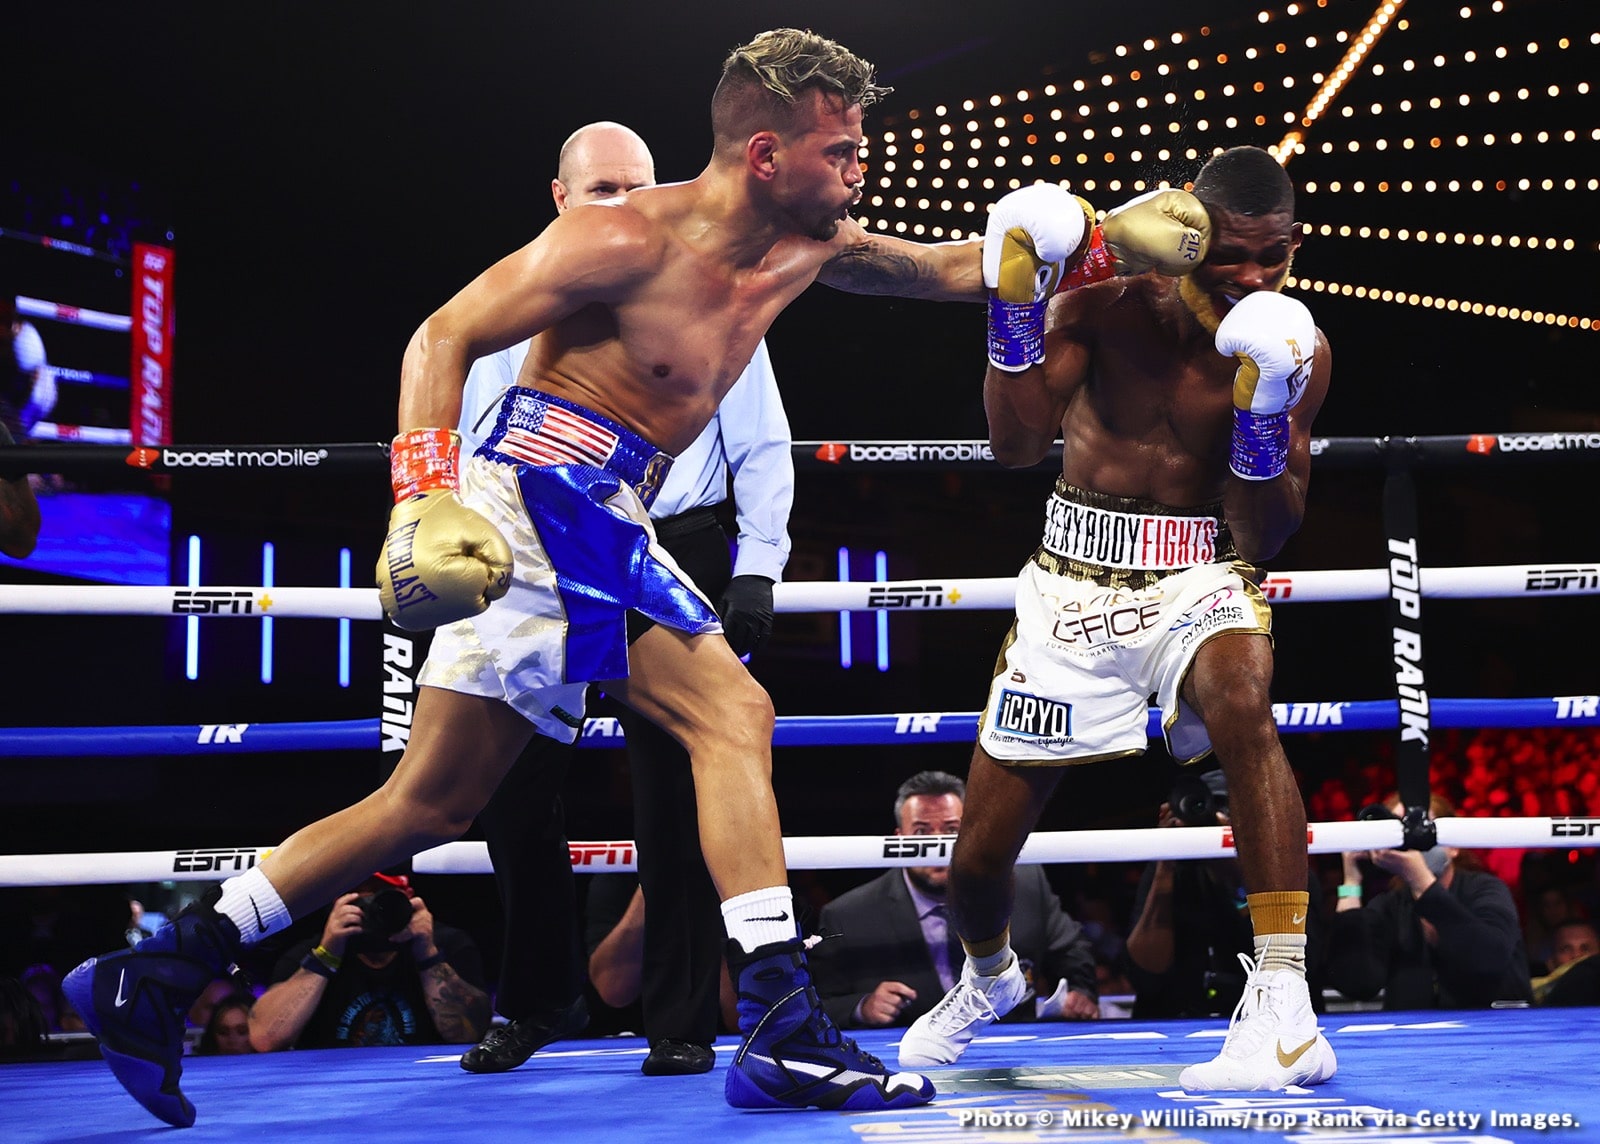 Abraham Nova, Robeisy Ramirez boxing image / photo